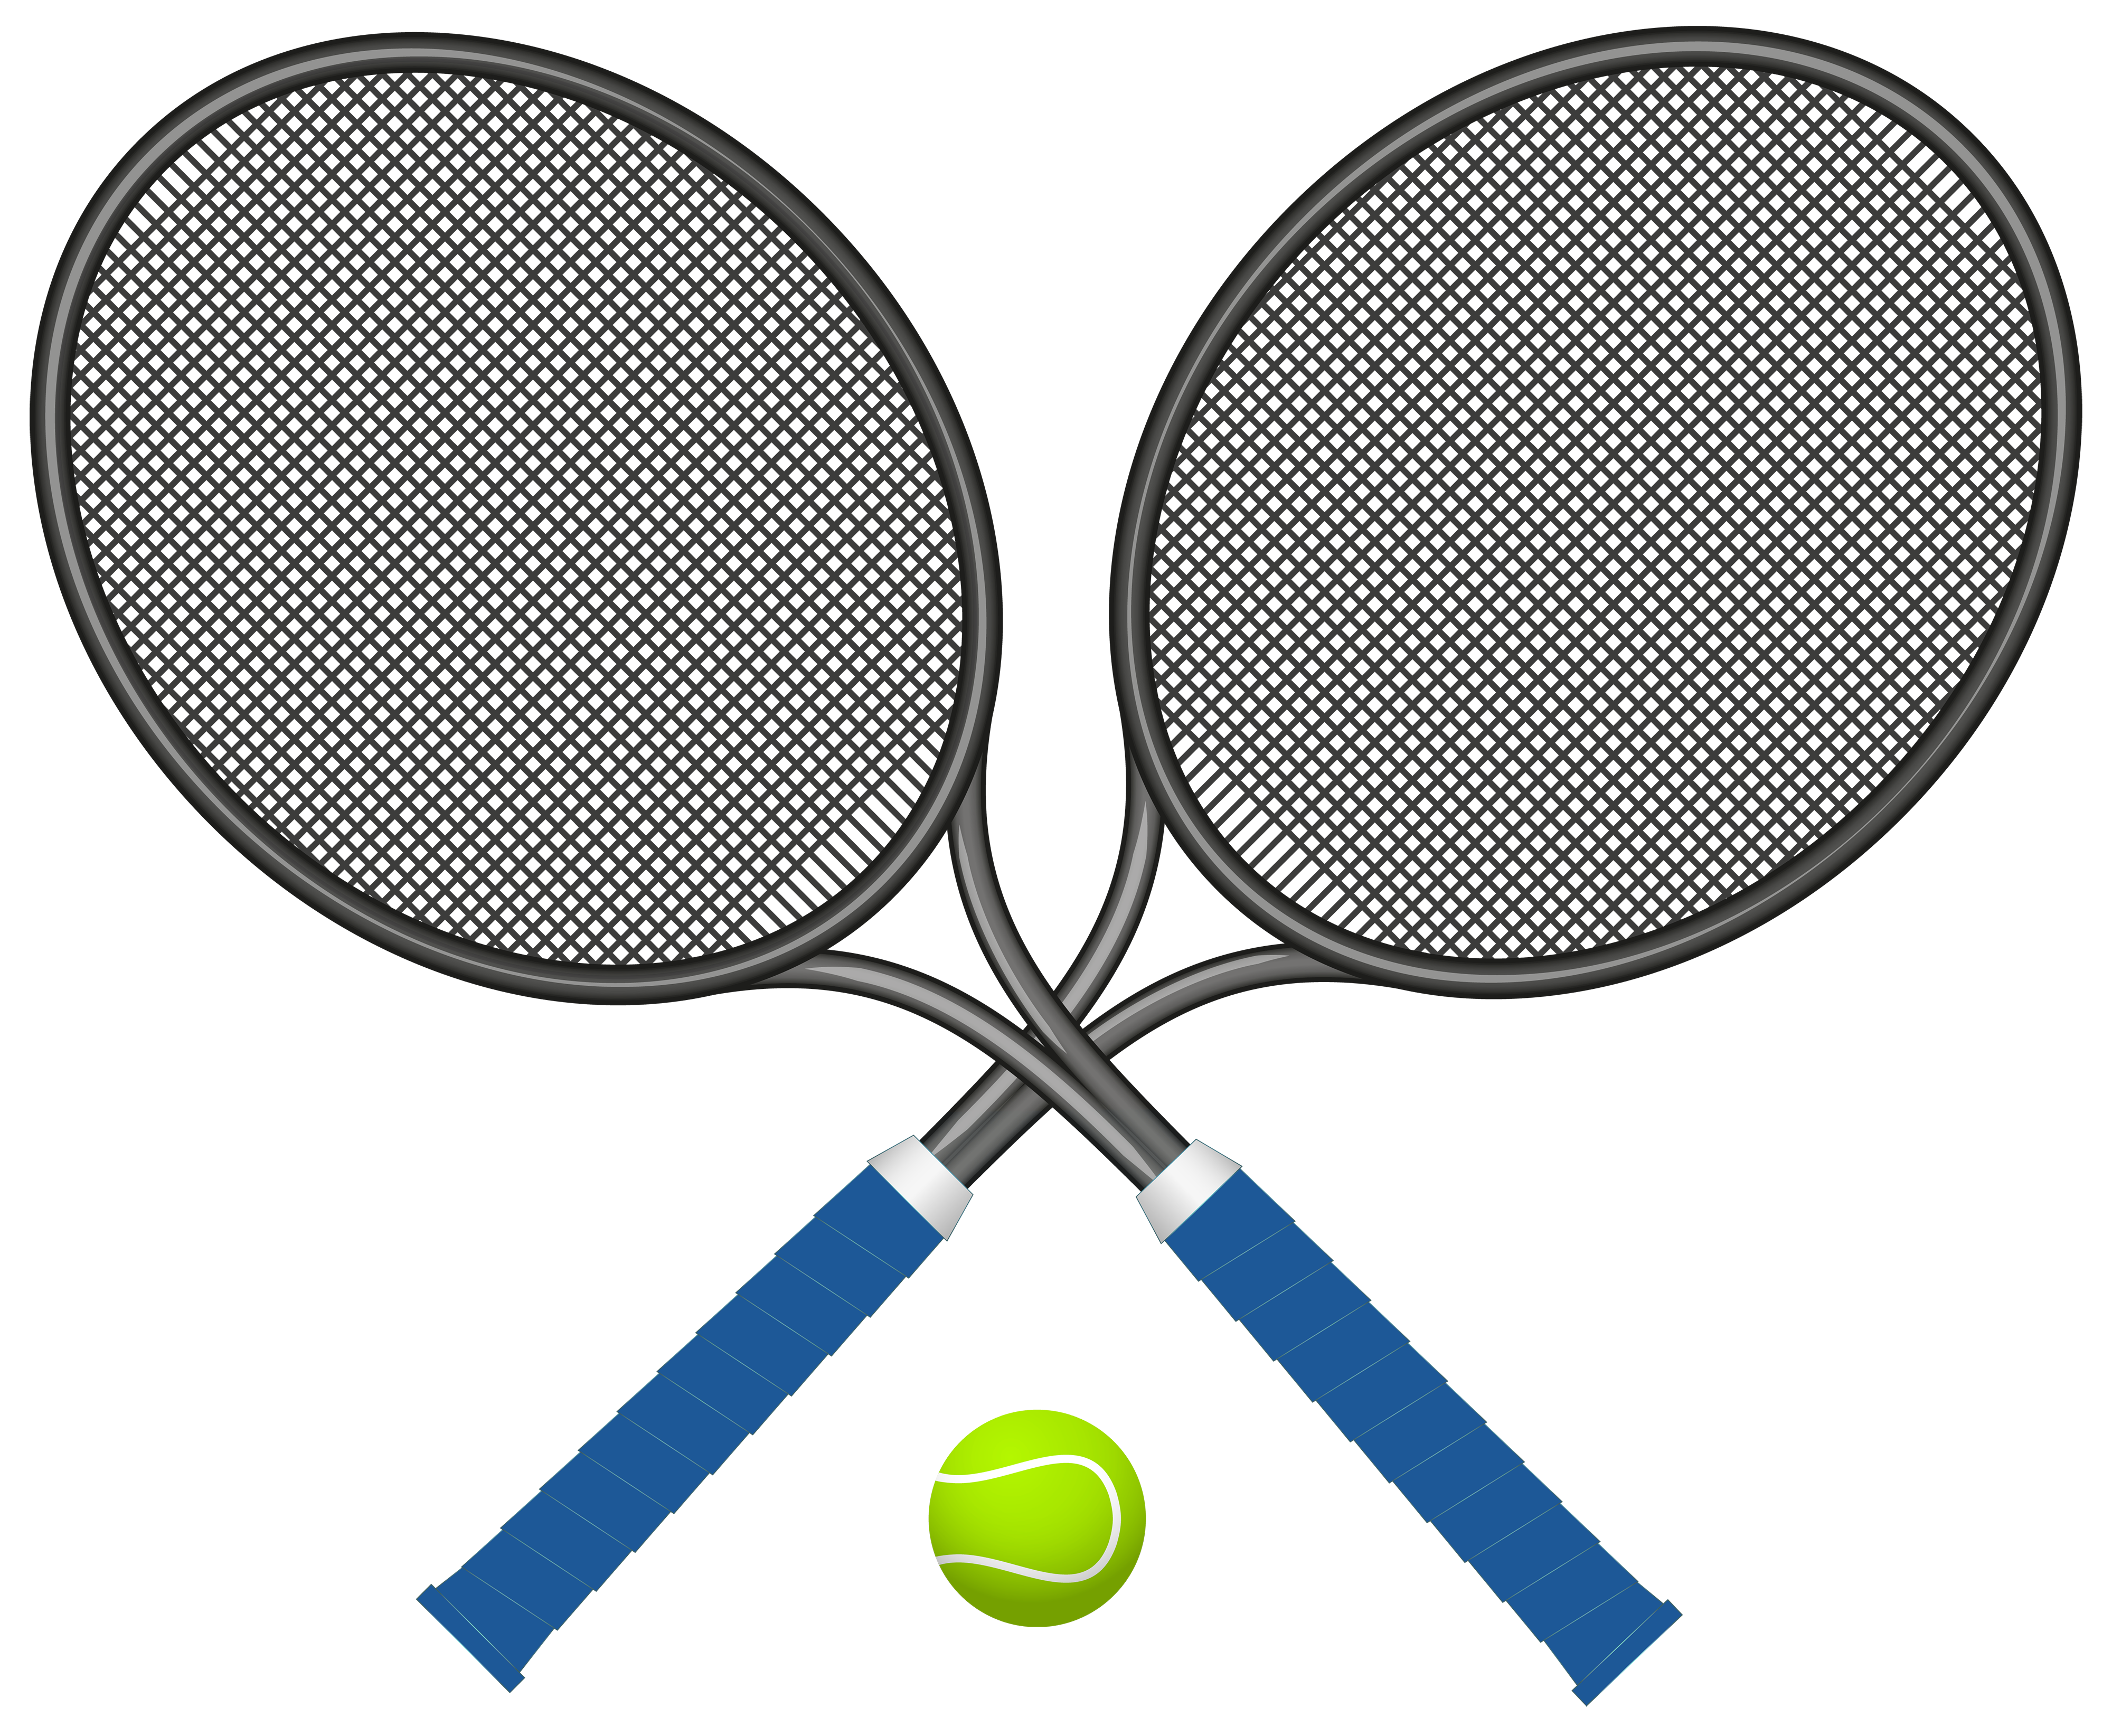 Tennis images clip art 2 clipartcow